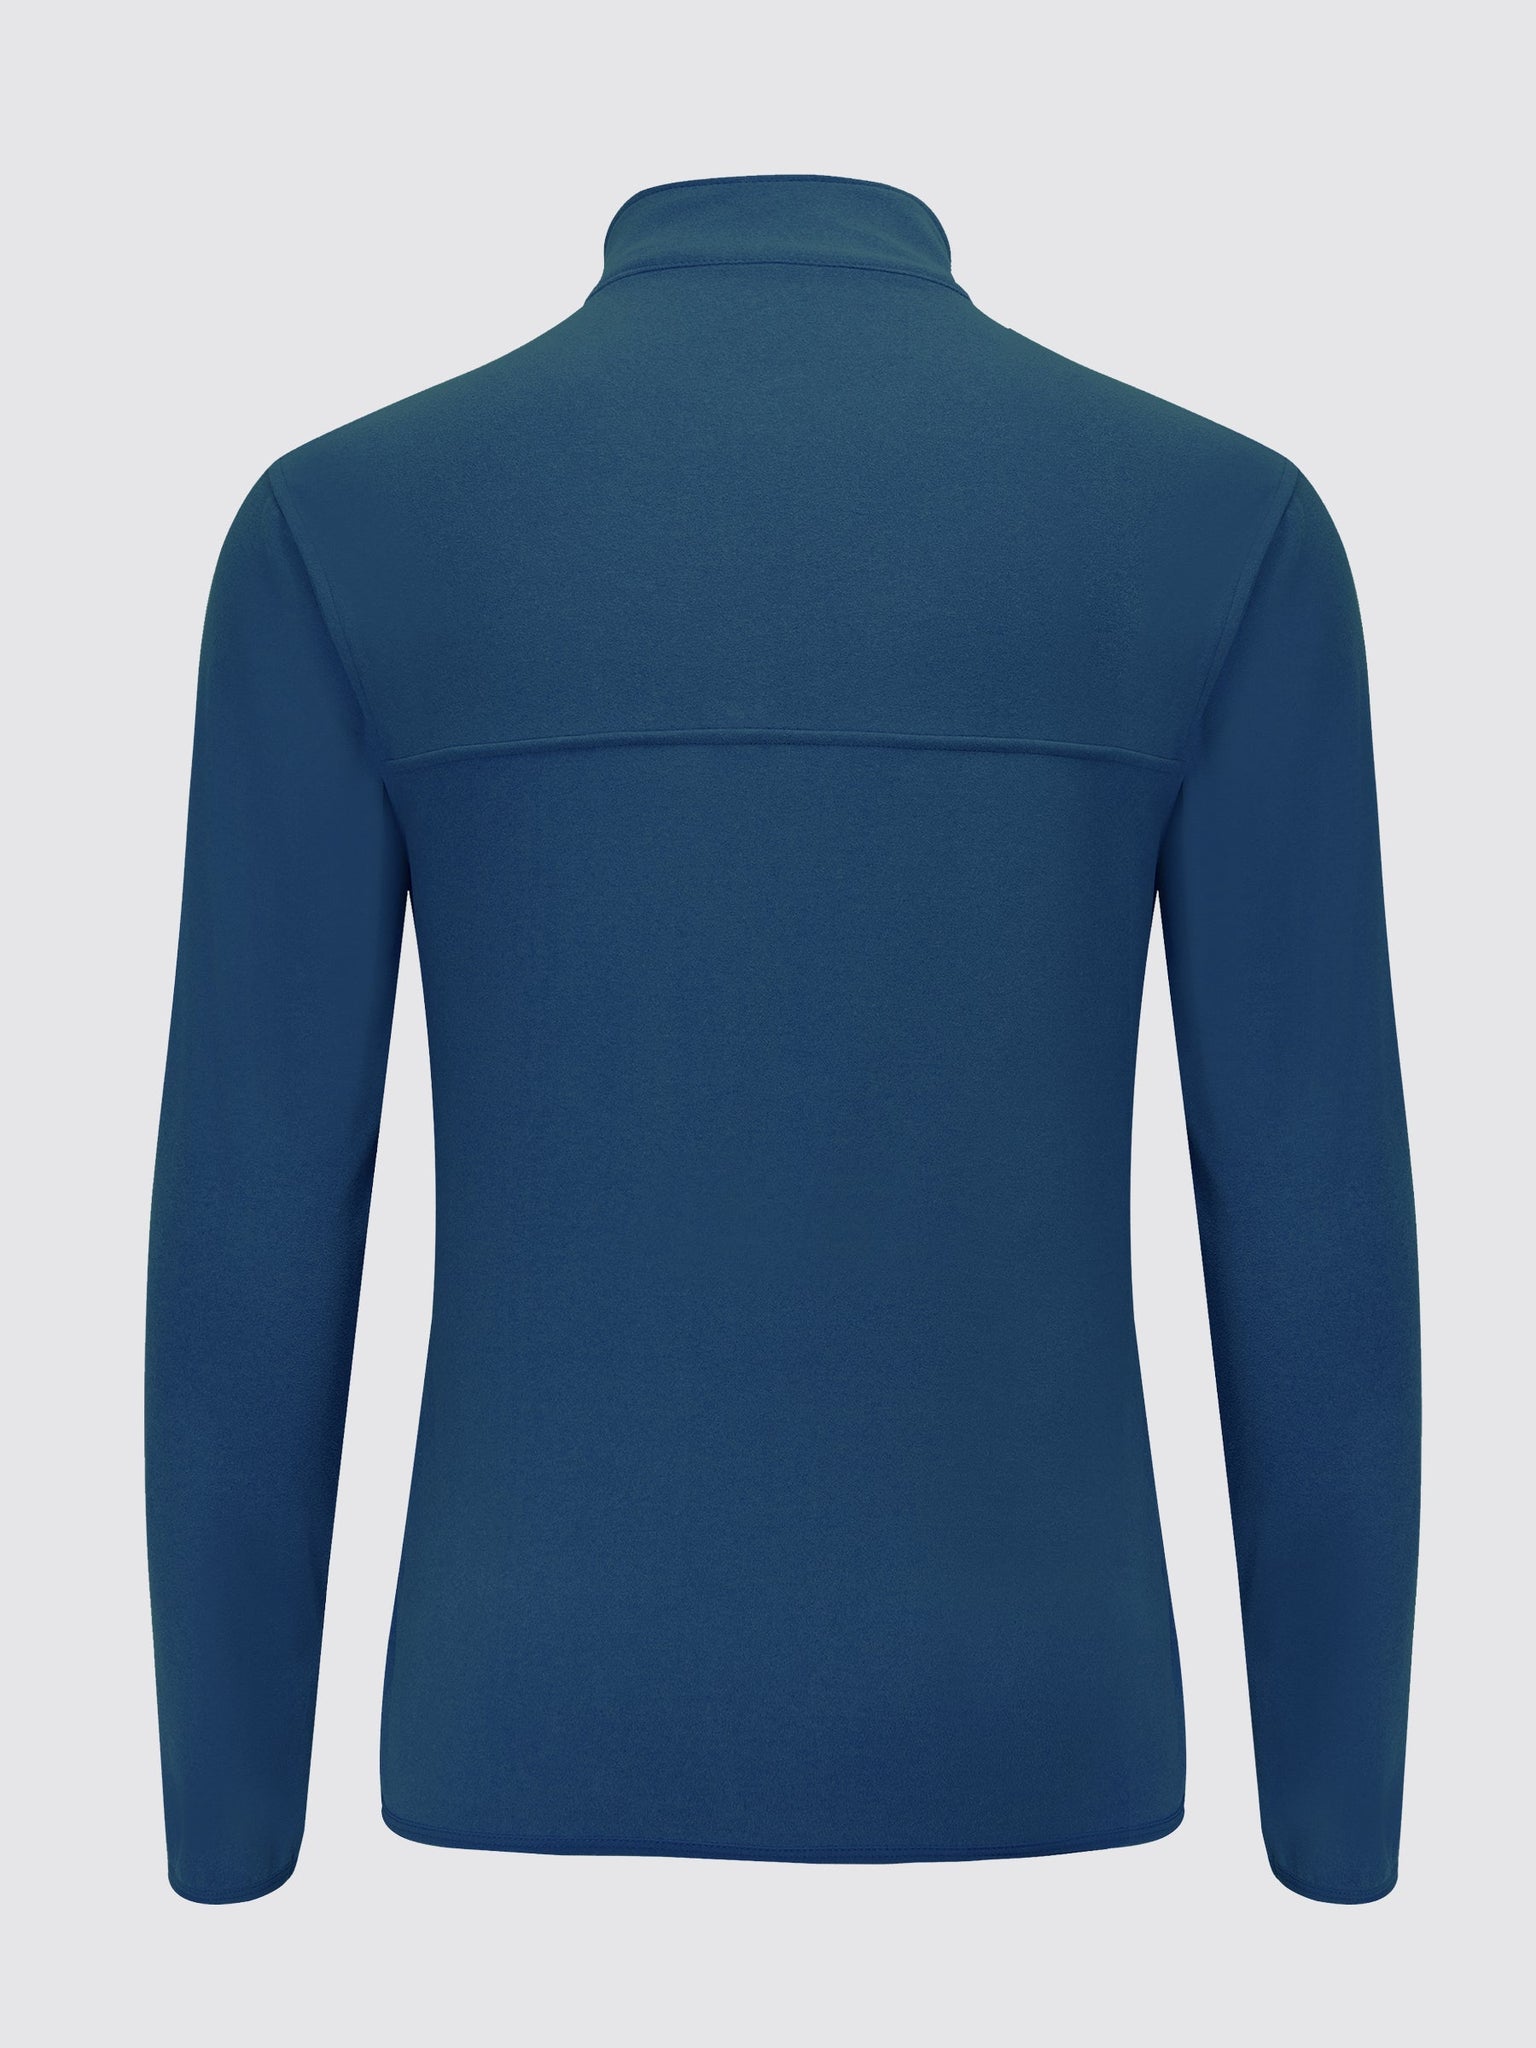 Willit Men's Fleece Pullover Lightweight Sportswear_Laydown_OceanBlue2